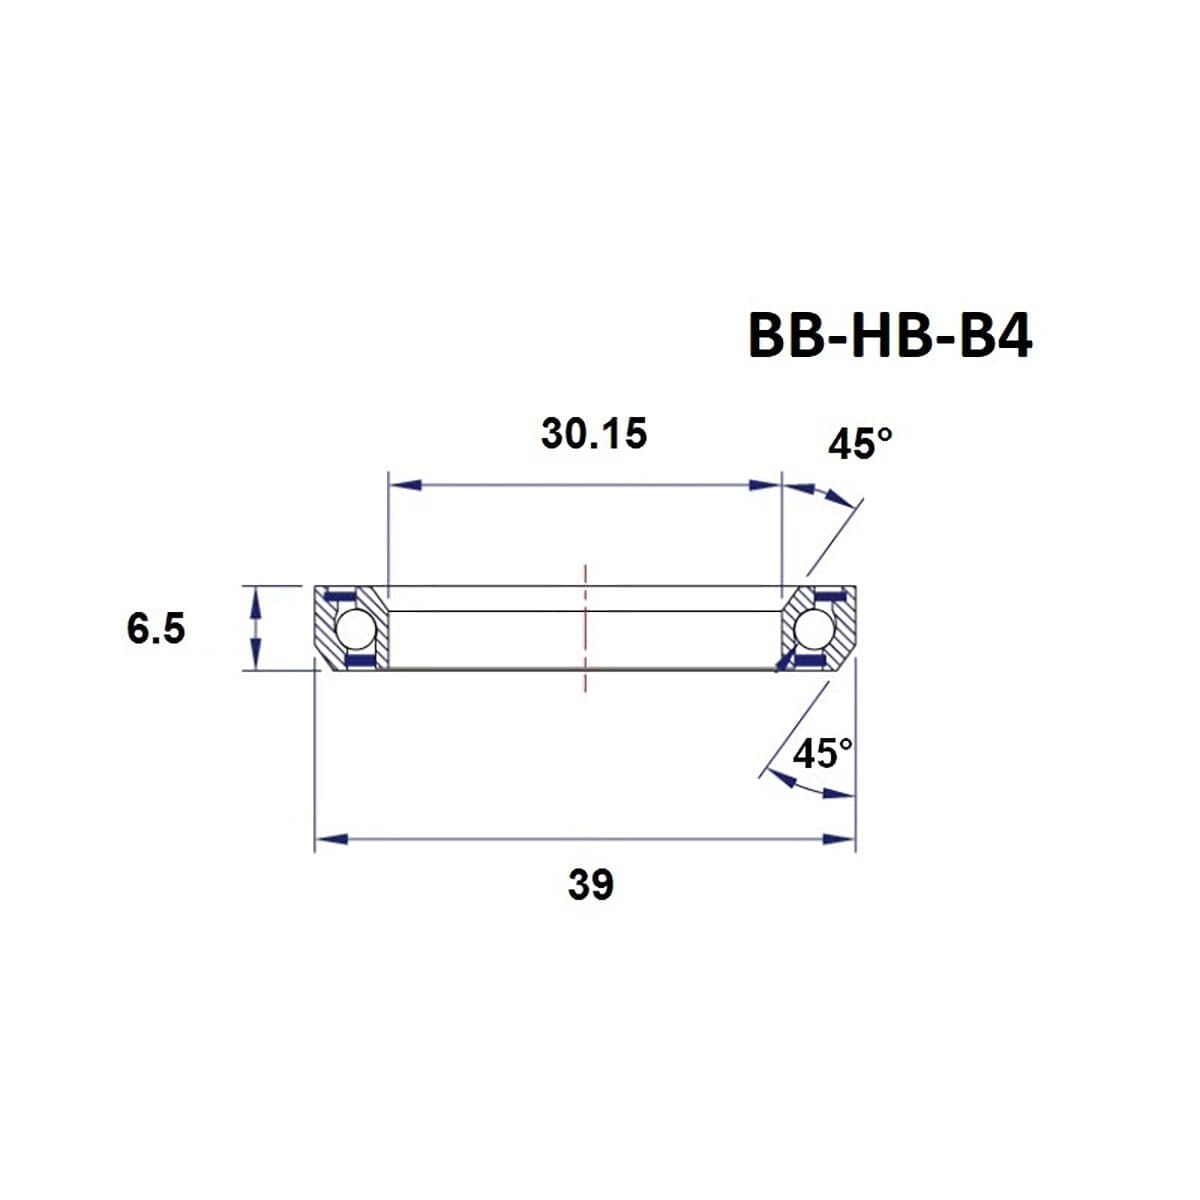 Roulement de Direction BLACK BEARING B4 1-1/8" 45/45° (30,15 x 39 x 6,5 mm)